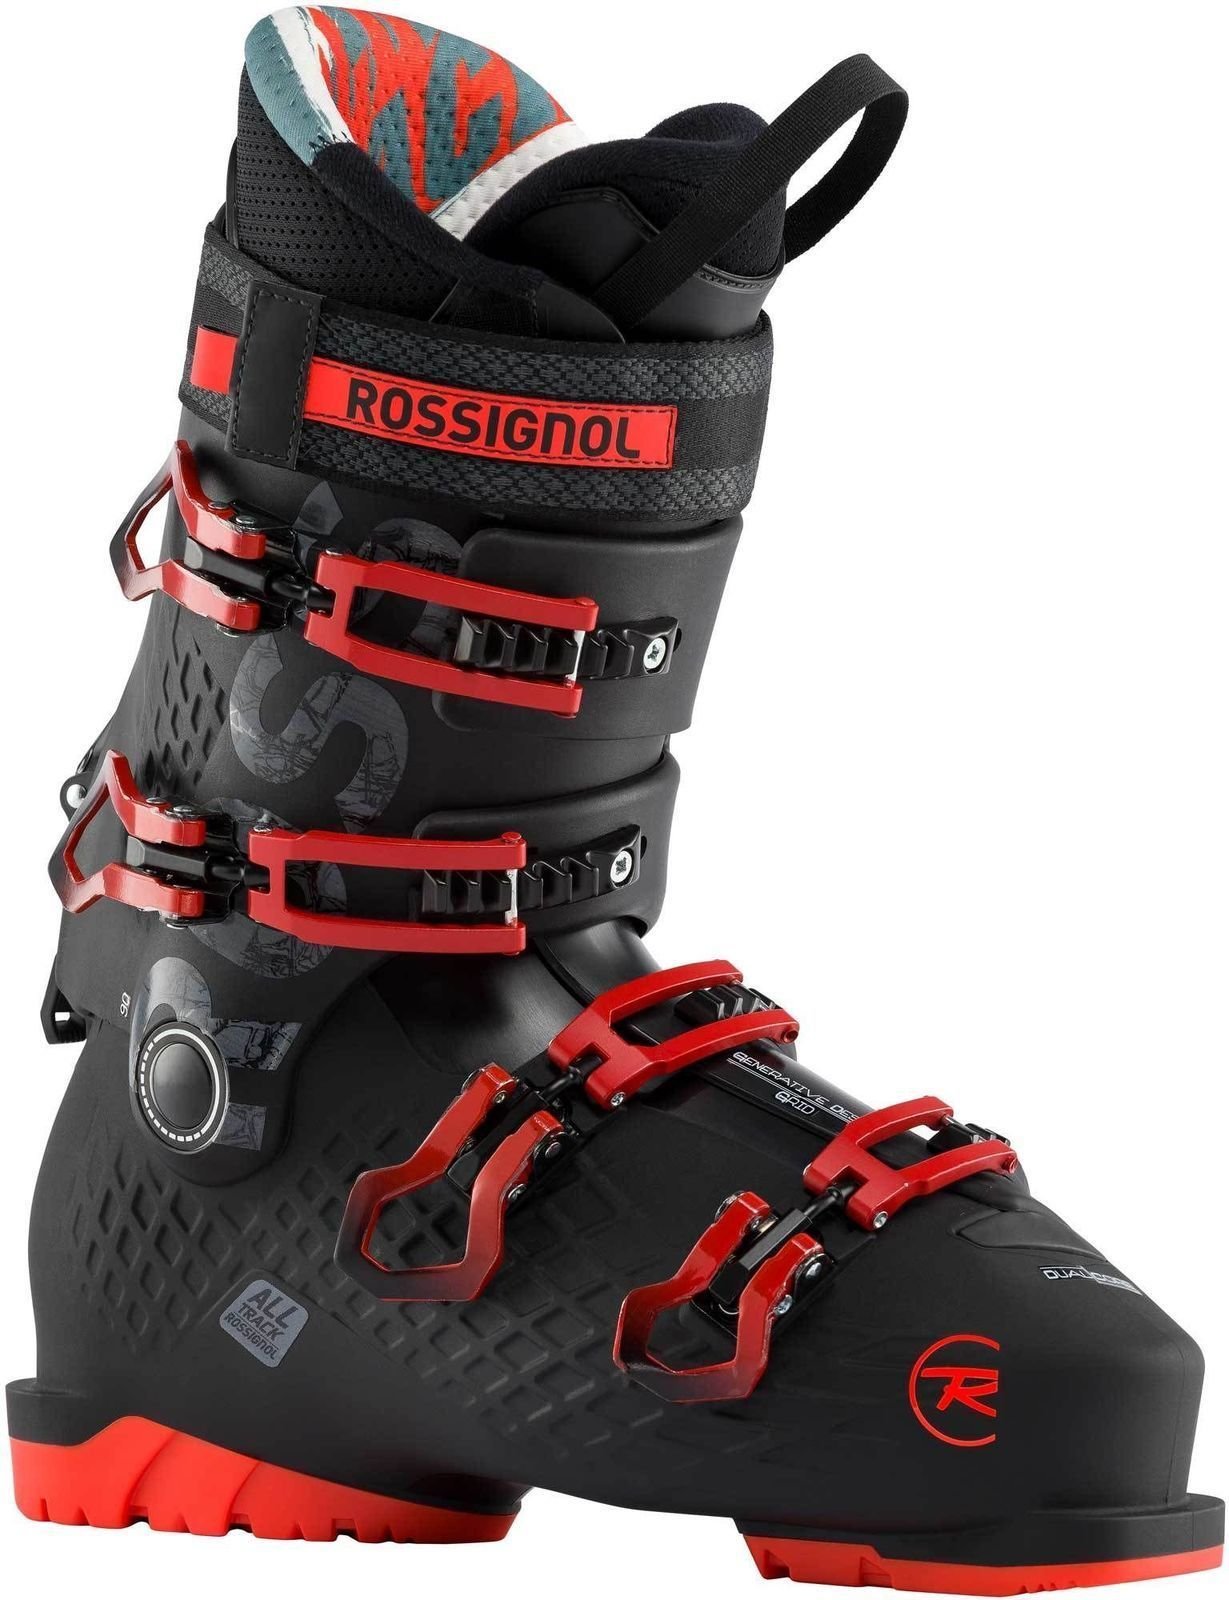 Μπότες Σκι Alpine Rossignol Alltrack Μαύρο-Κόκκινο 290 Μπότες Σκι Alpine